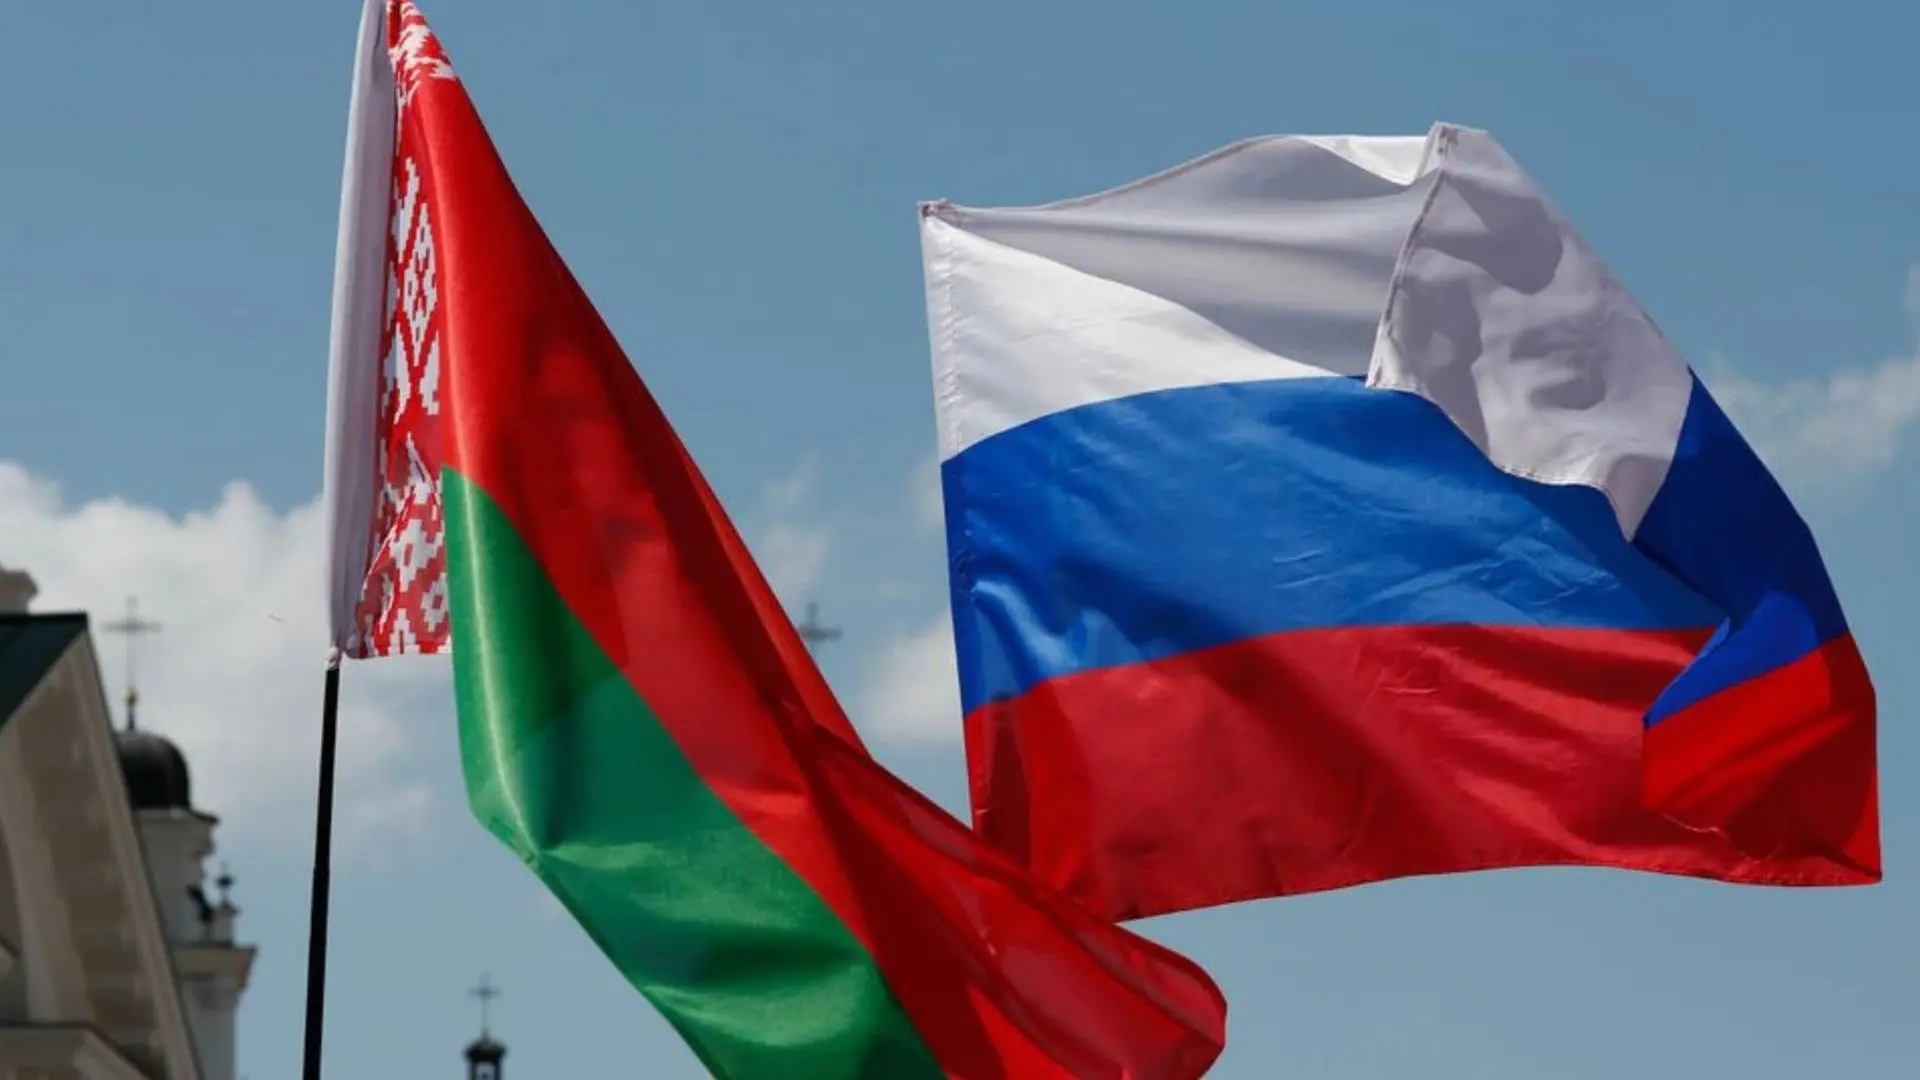 zastave_Rusija_Bjelorusija_foto_Reuters-63c64d88f0bf9.webp